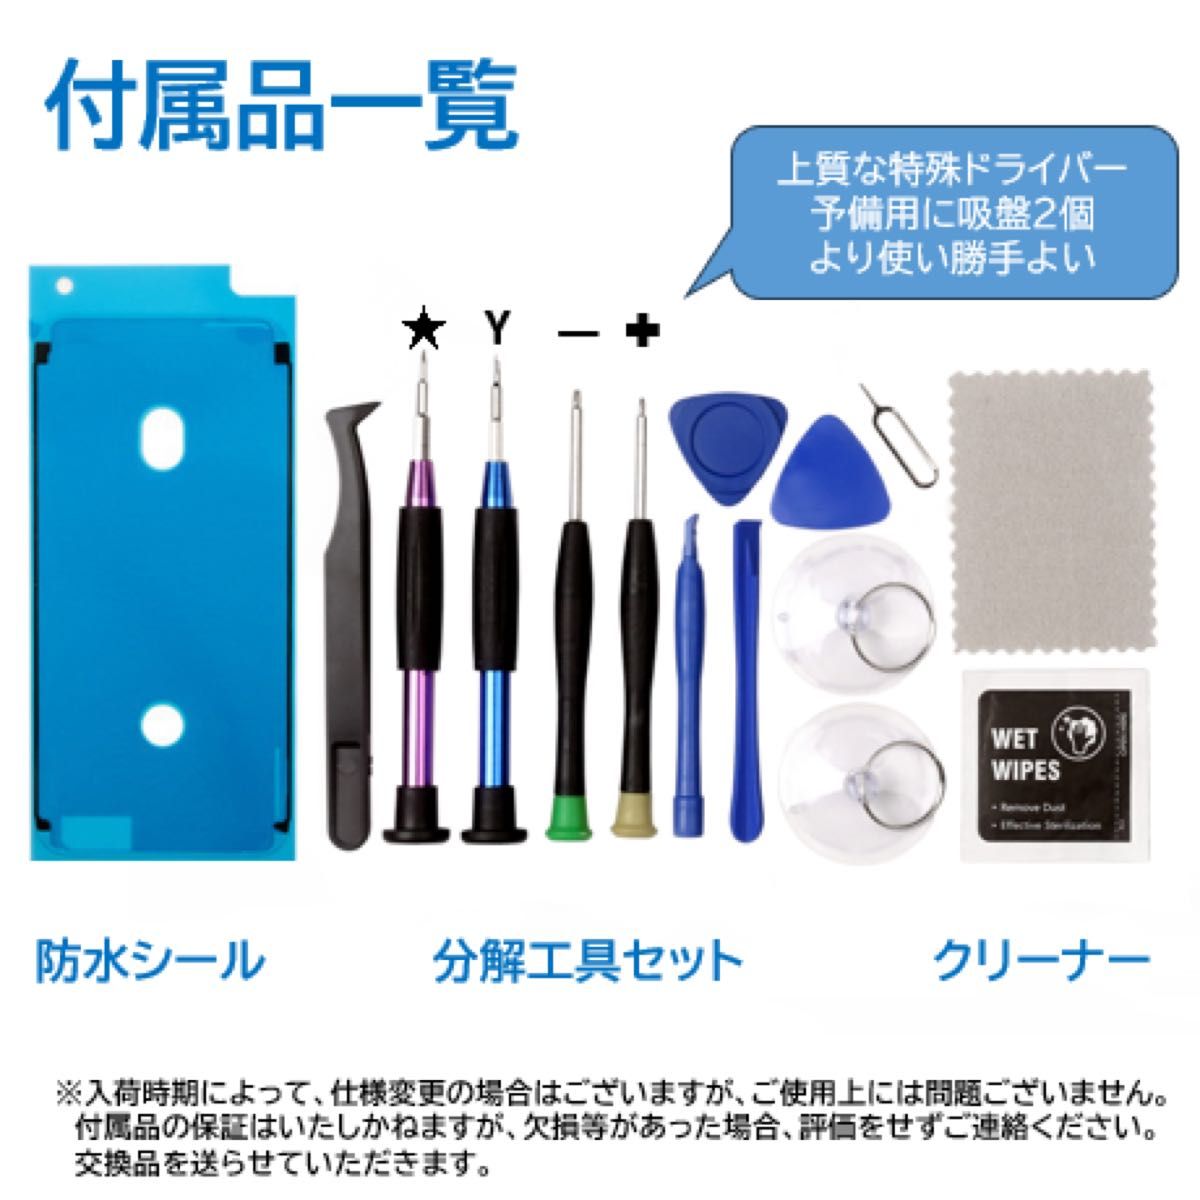 【新品】iPhone7白 液晶フロントパネル 画面修理交換用 工具付